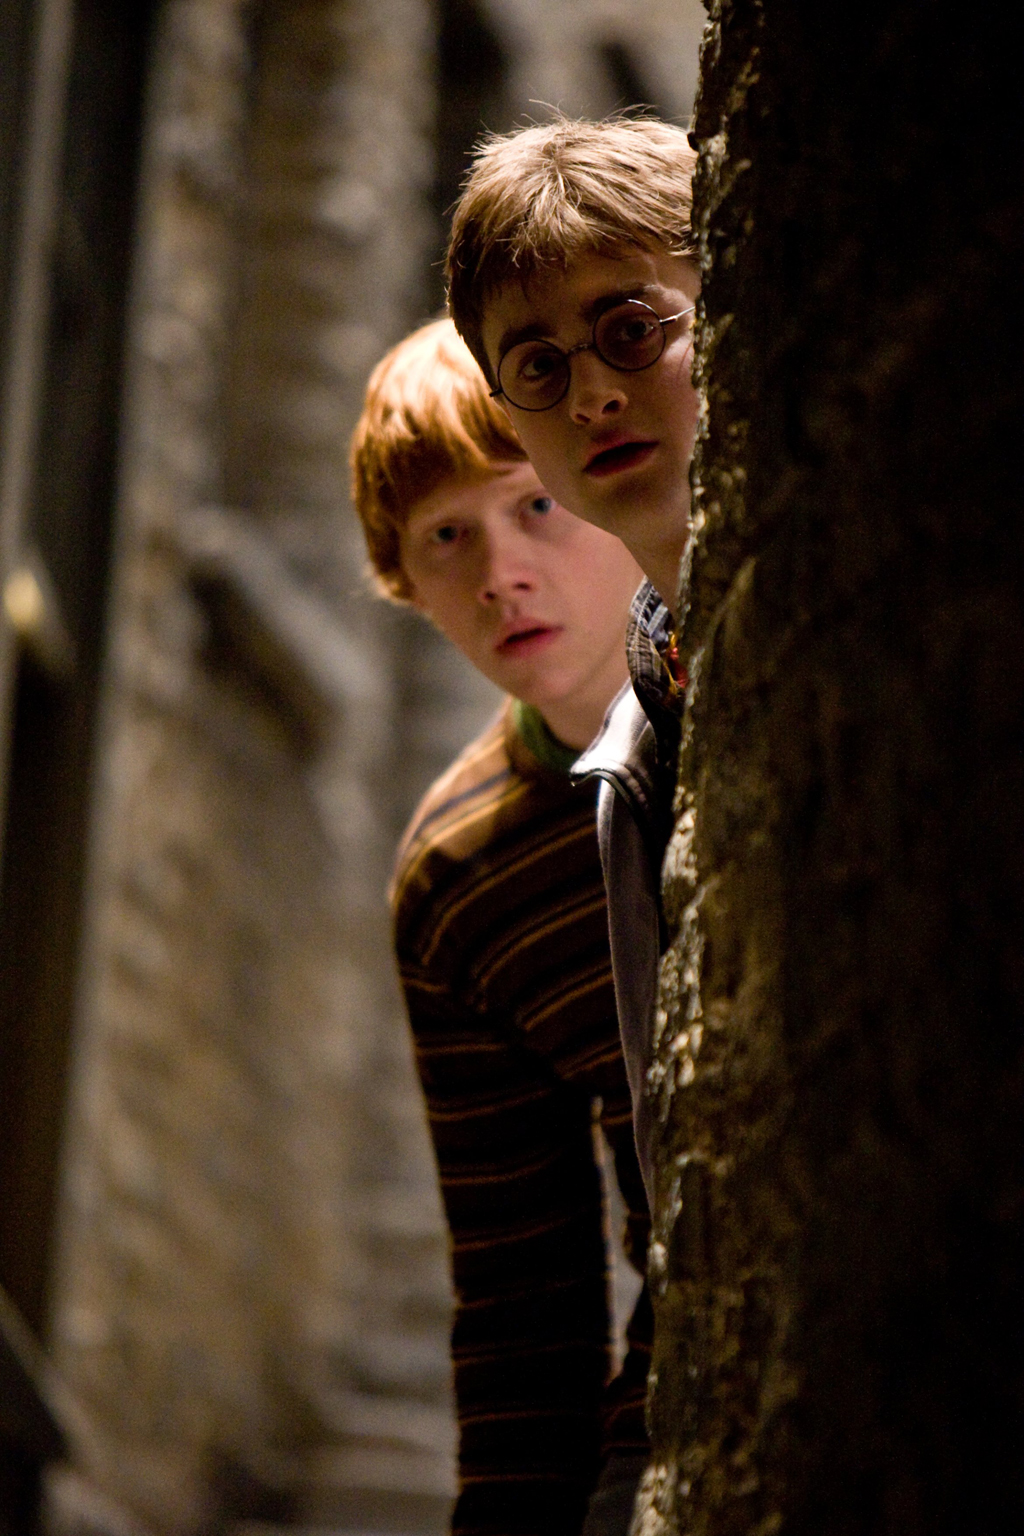 Harry Potter et le prince de sang-mêlé (Film, 2009) — CinéSéries